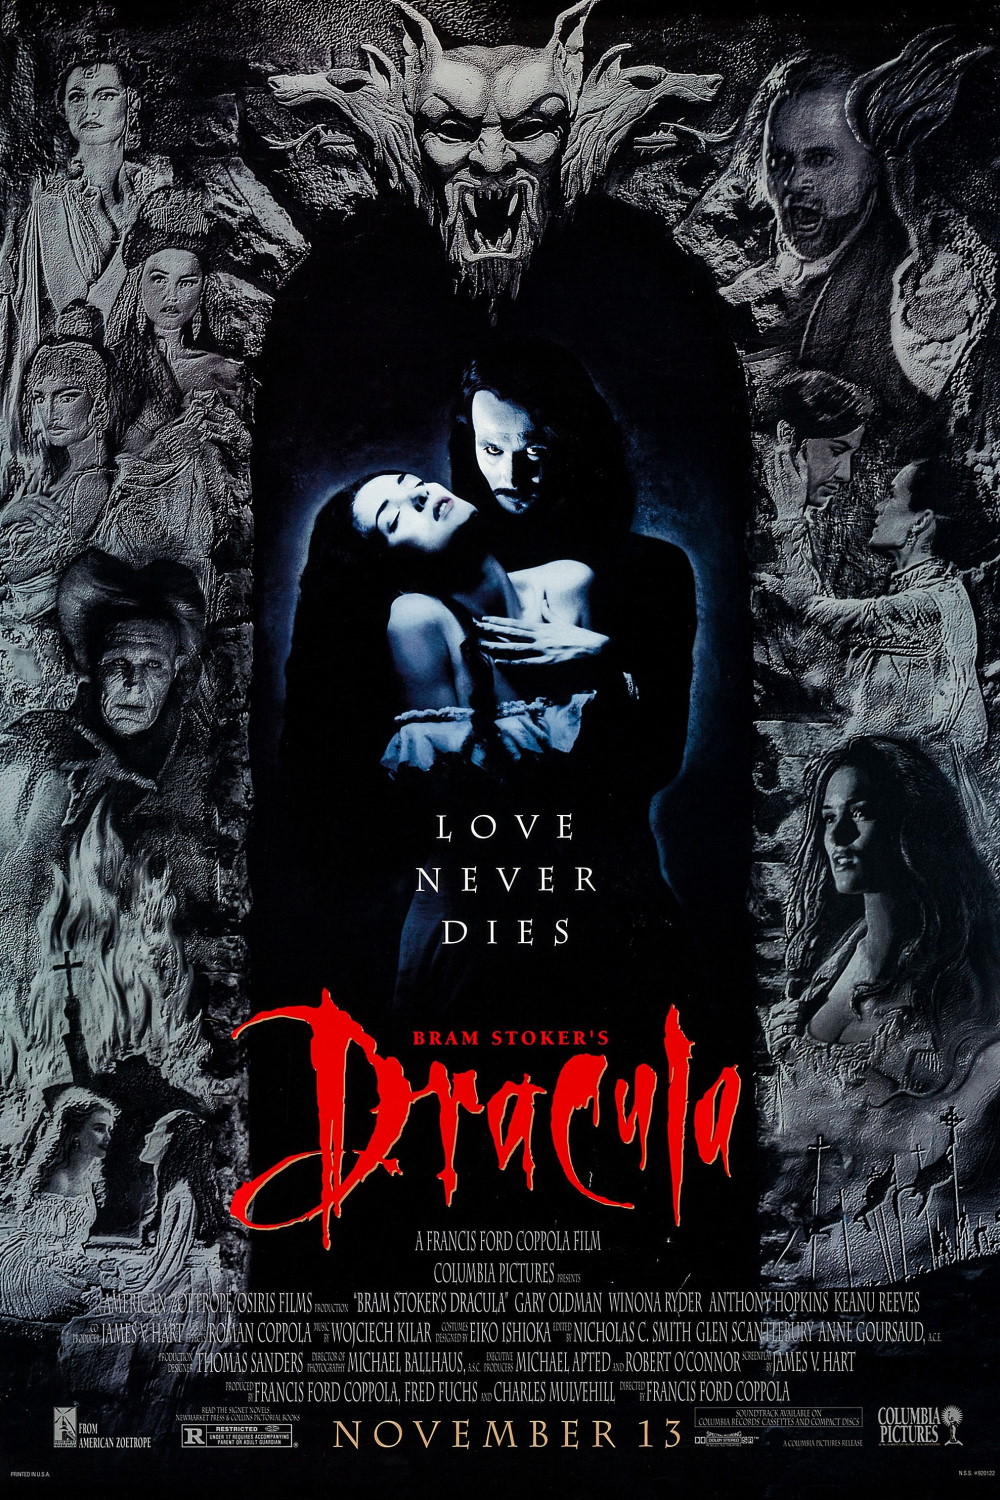 Bram Stoker’s Dracula (1992) Poster